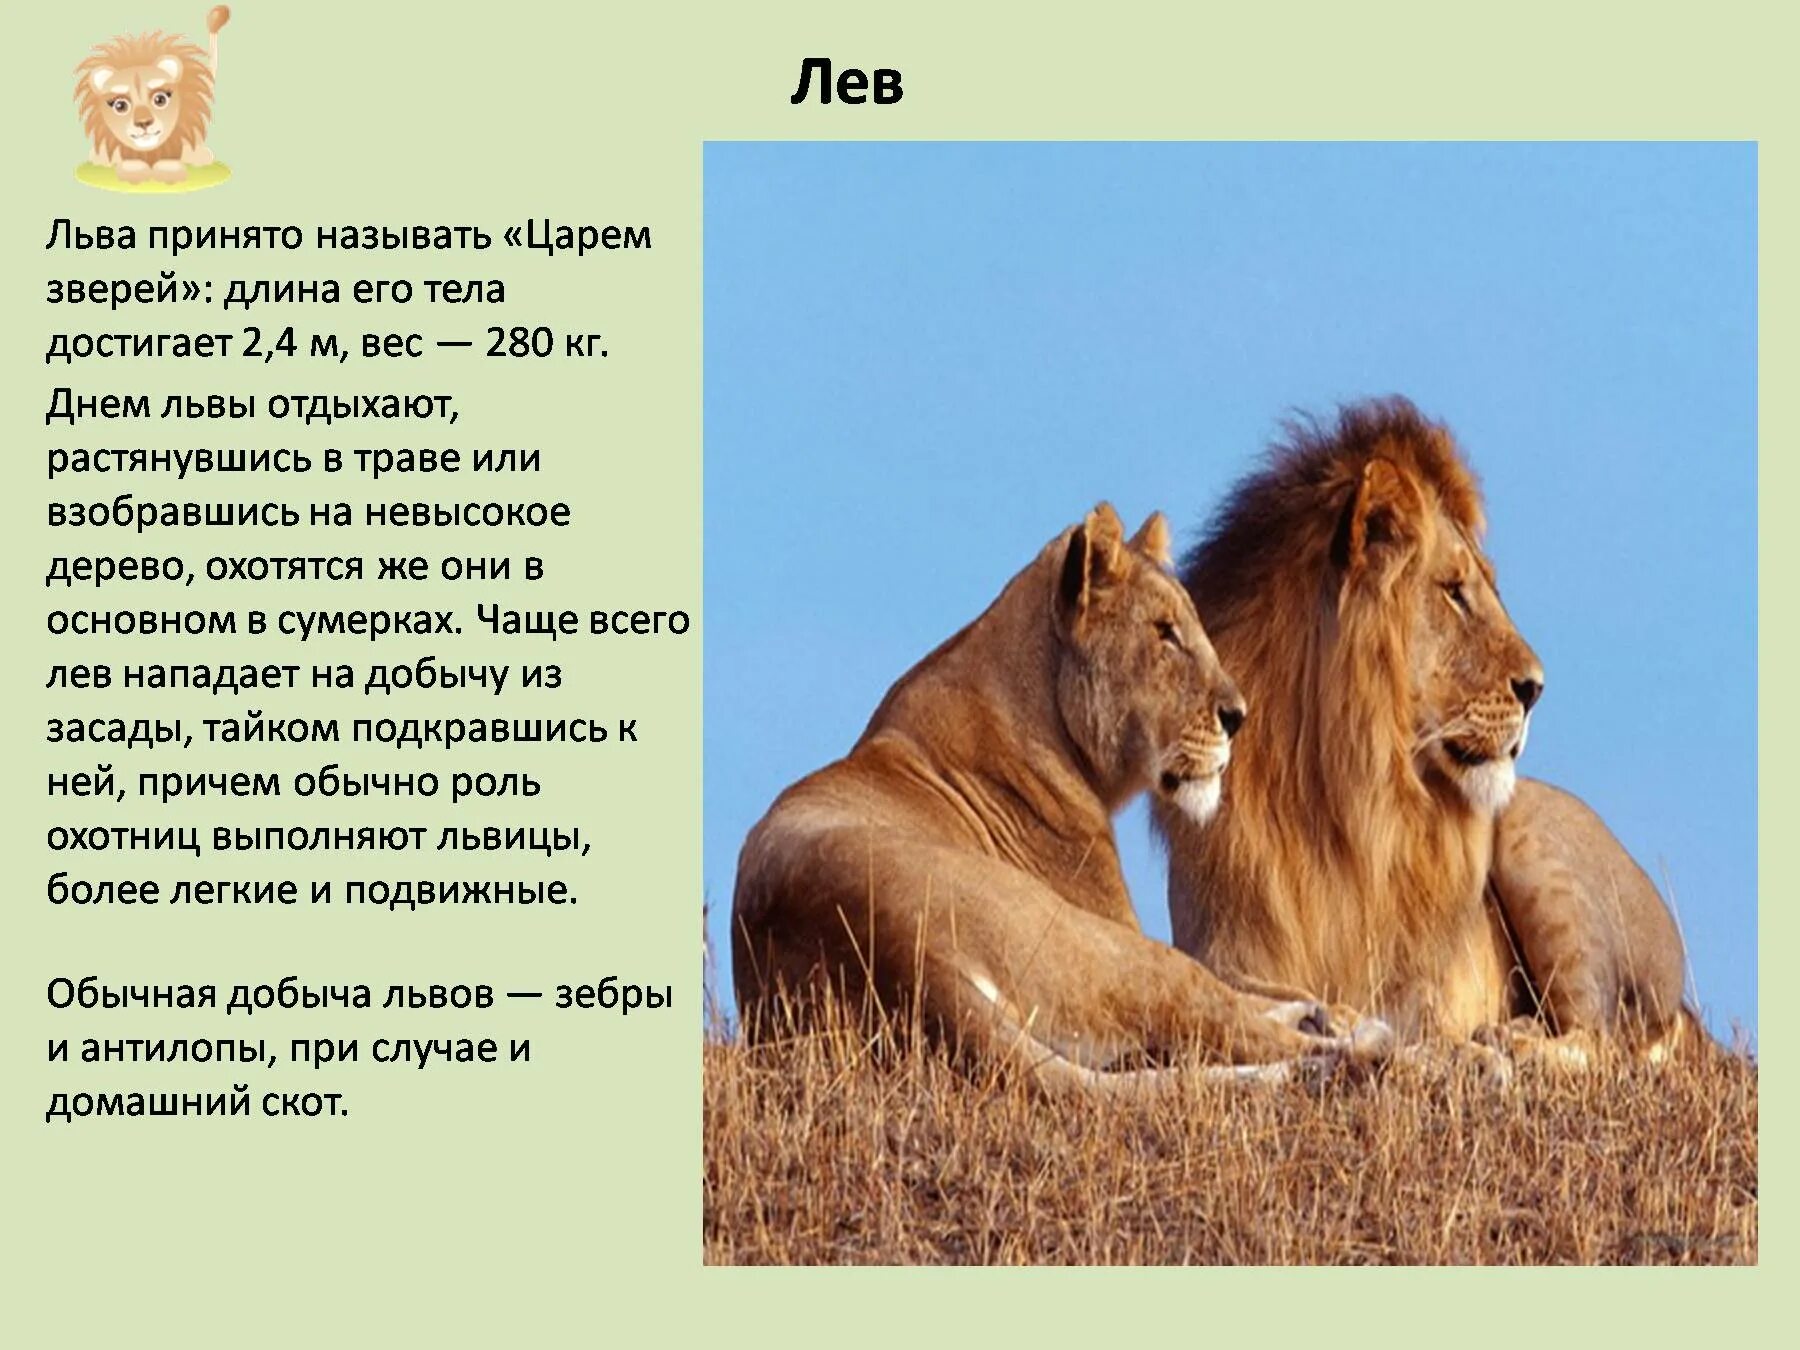 Про 1 зверей. Доклад о животных. Описание Льва. Рассказ про Льва. Презентация про животных.